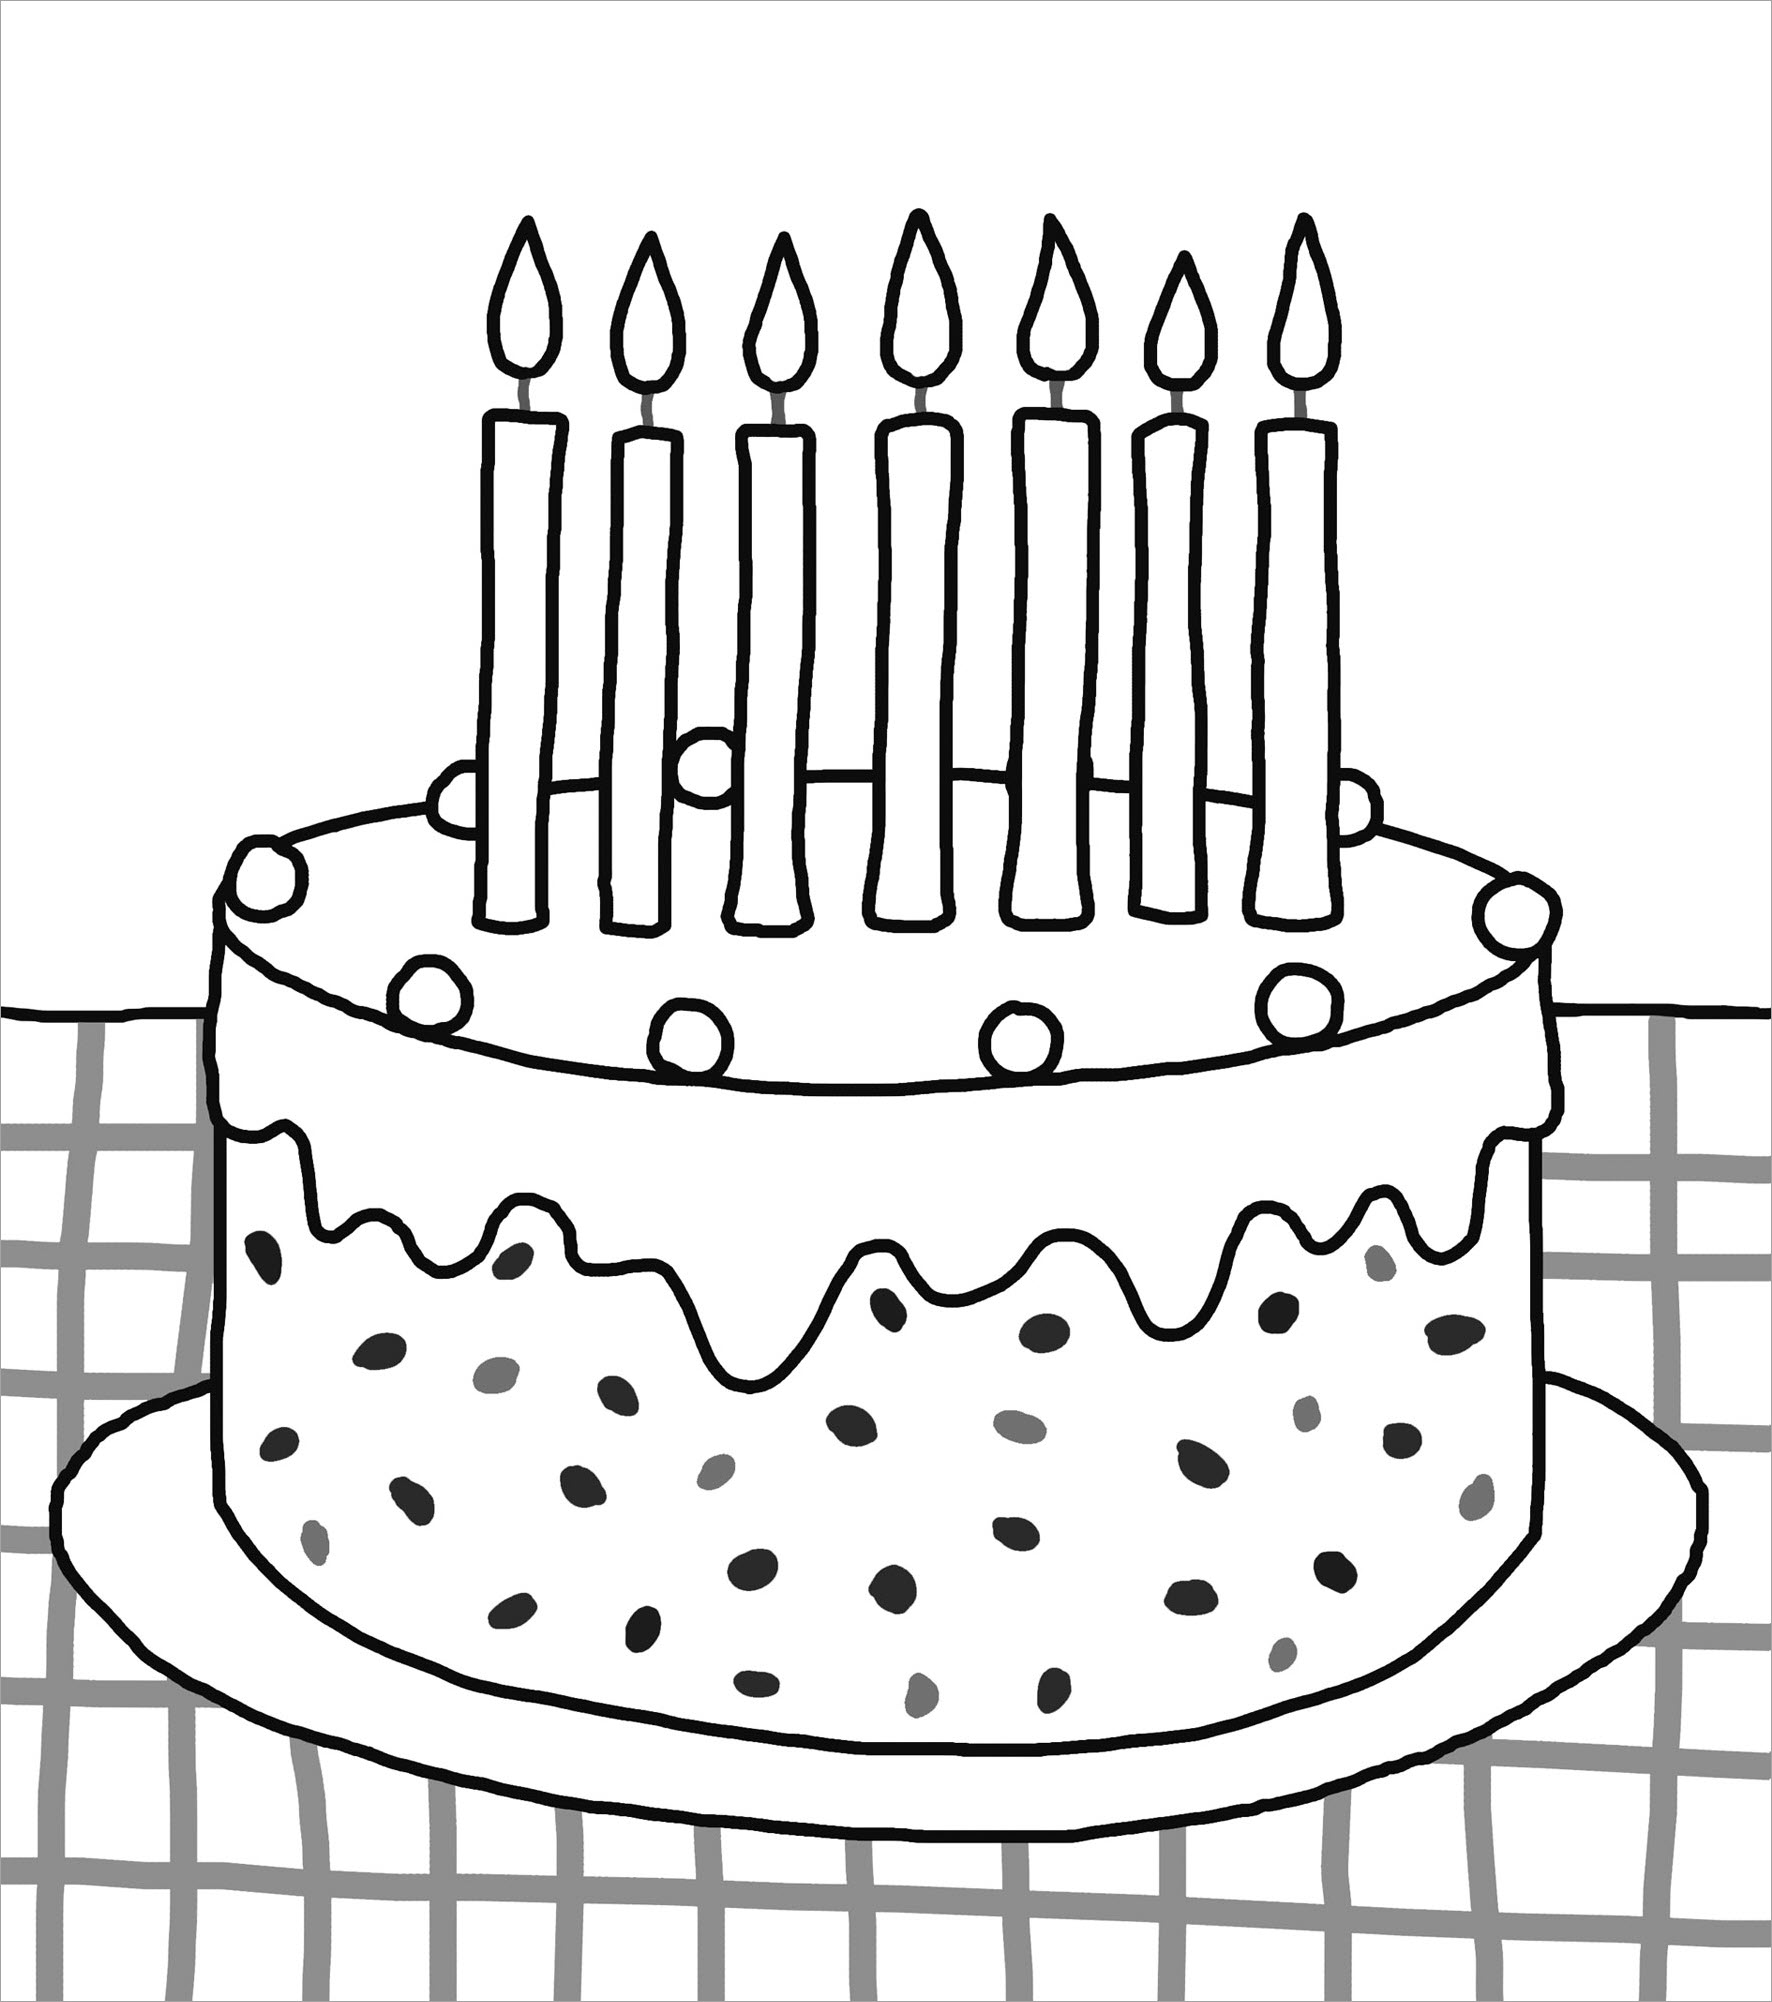 Tải miễn phí 101 tranh tô màu Bánh kem sinh nhật cho bé